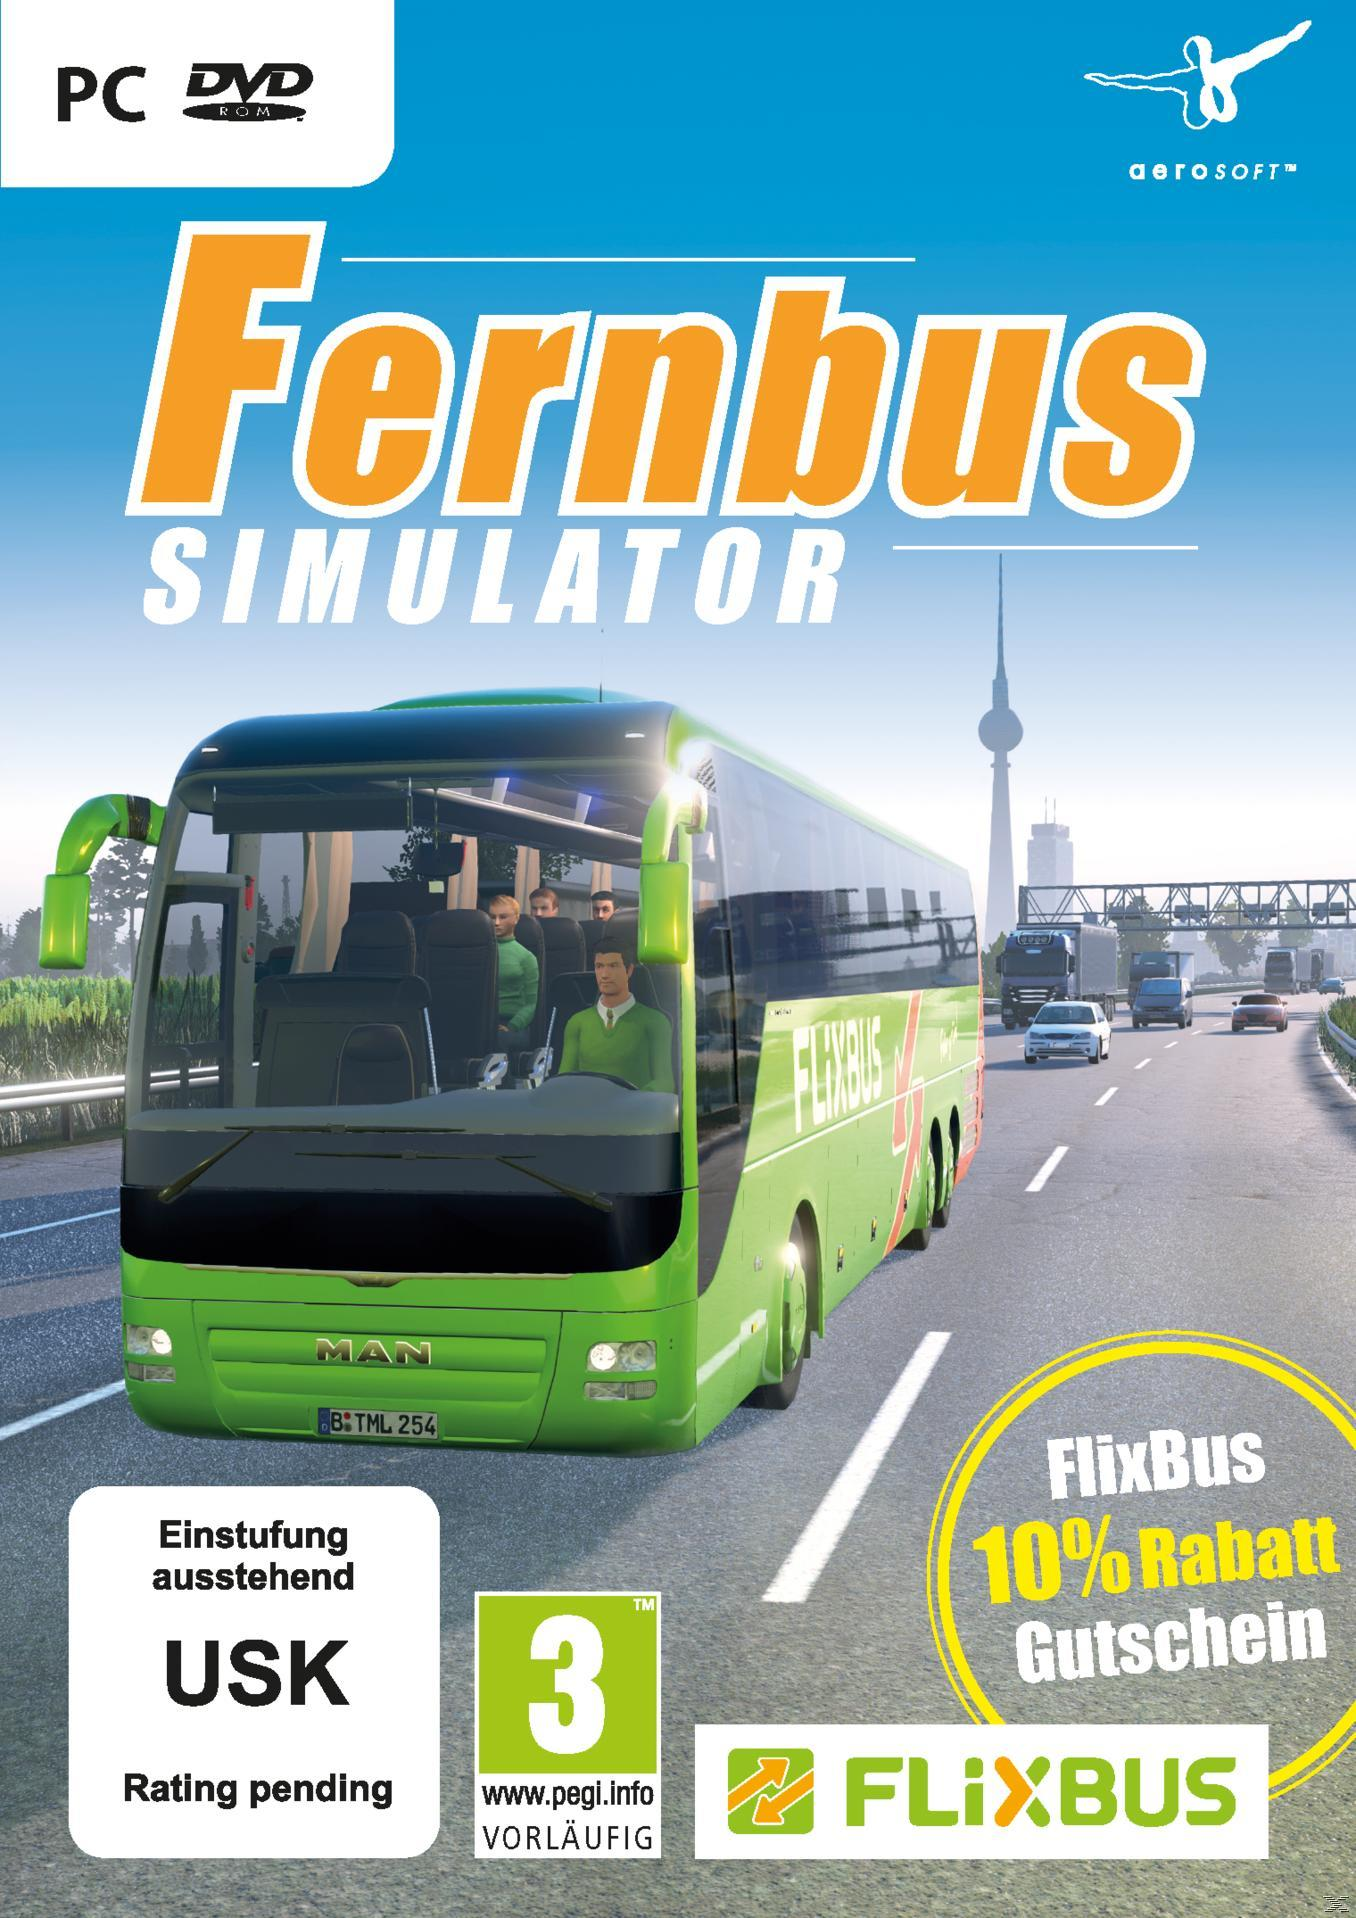 [PC] - Simulator Fernbus